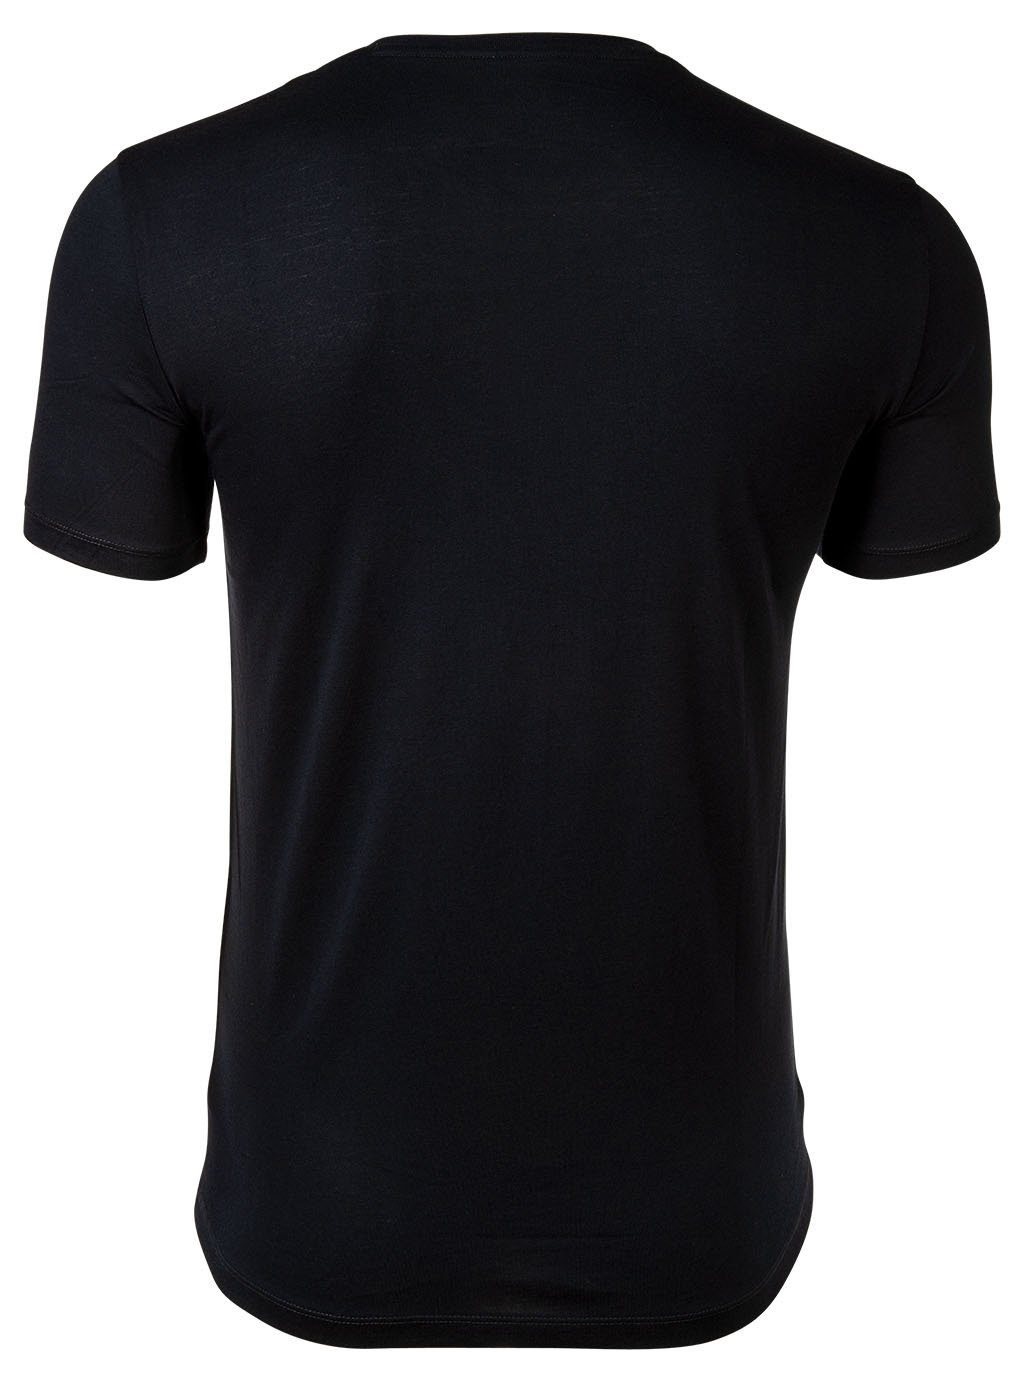 ARMANI EXCHANGE Herren T-Shirt Rundhals, T-Shirt Schriftzug, Marine - Cotton